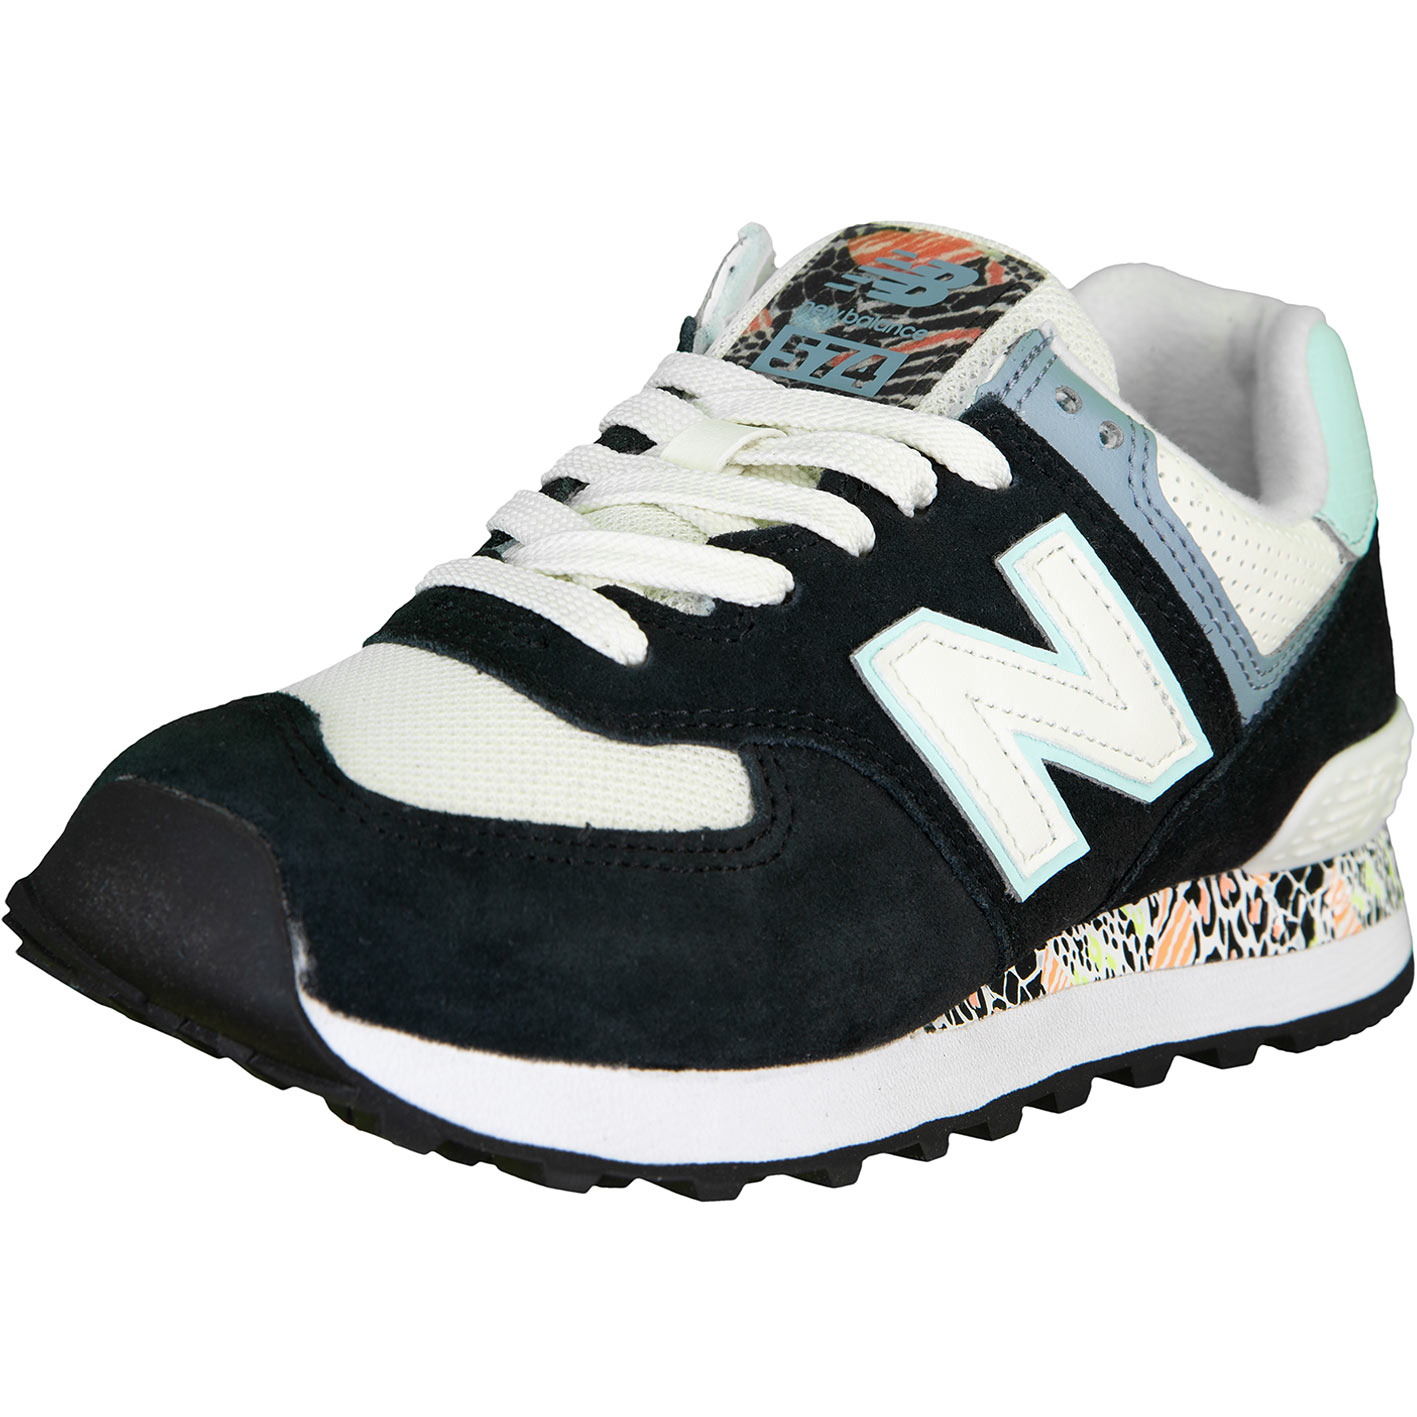 ☆ New Balance NB Damen Sneaker Schuhe schwarz - hier bestellen!